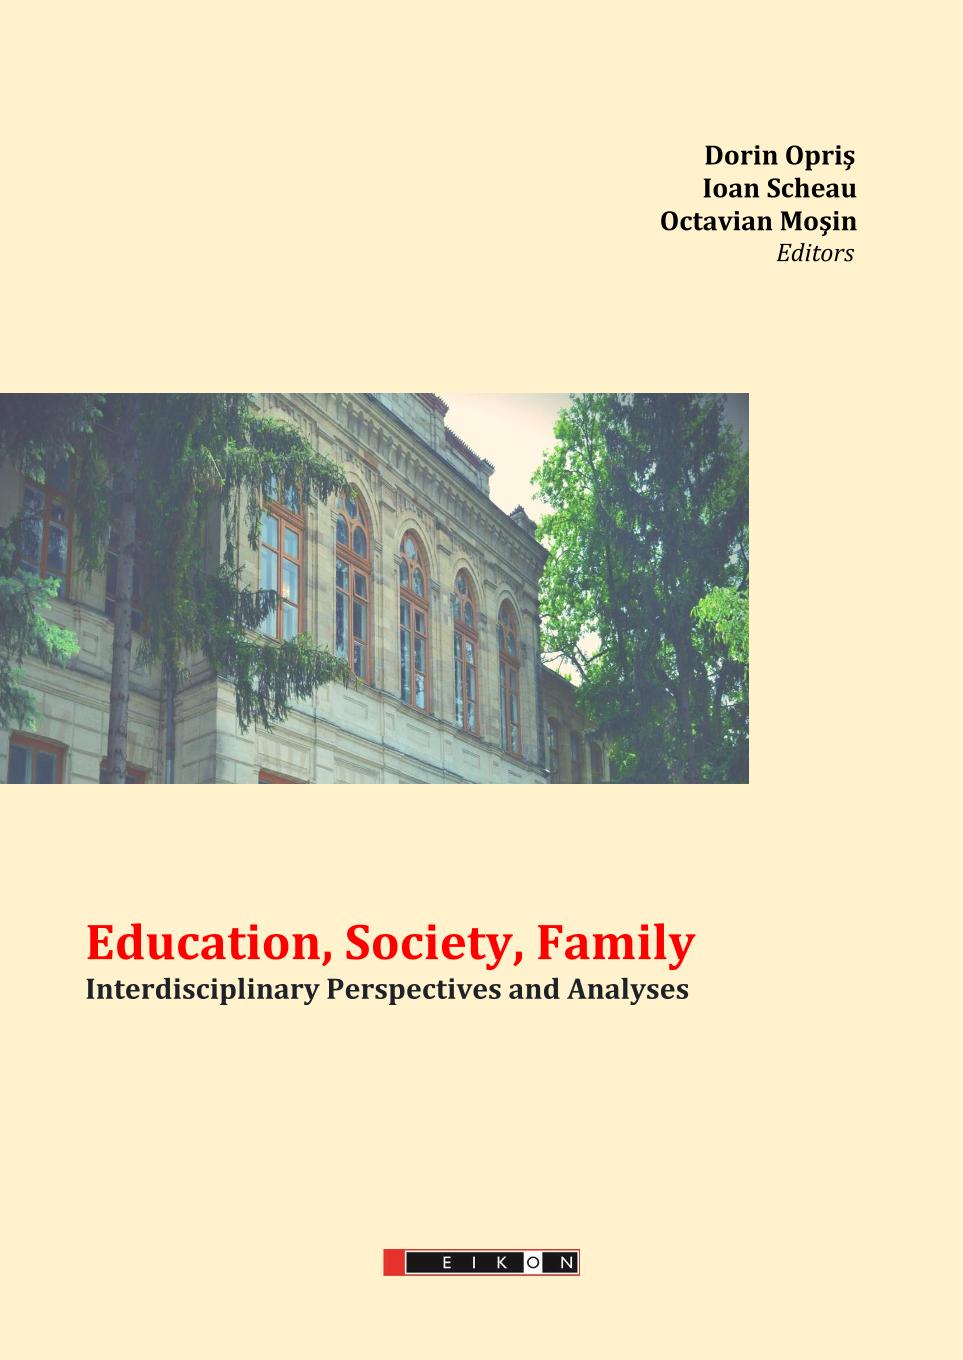 EDUCATION, SOCIETY, FAMILY. INTERDISCIPLINARY PERSPECTIVES AND ANALYSES